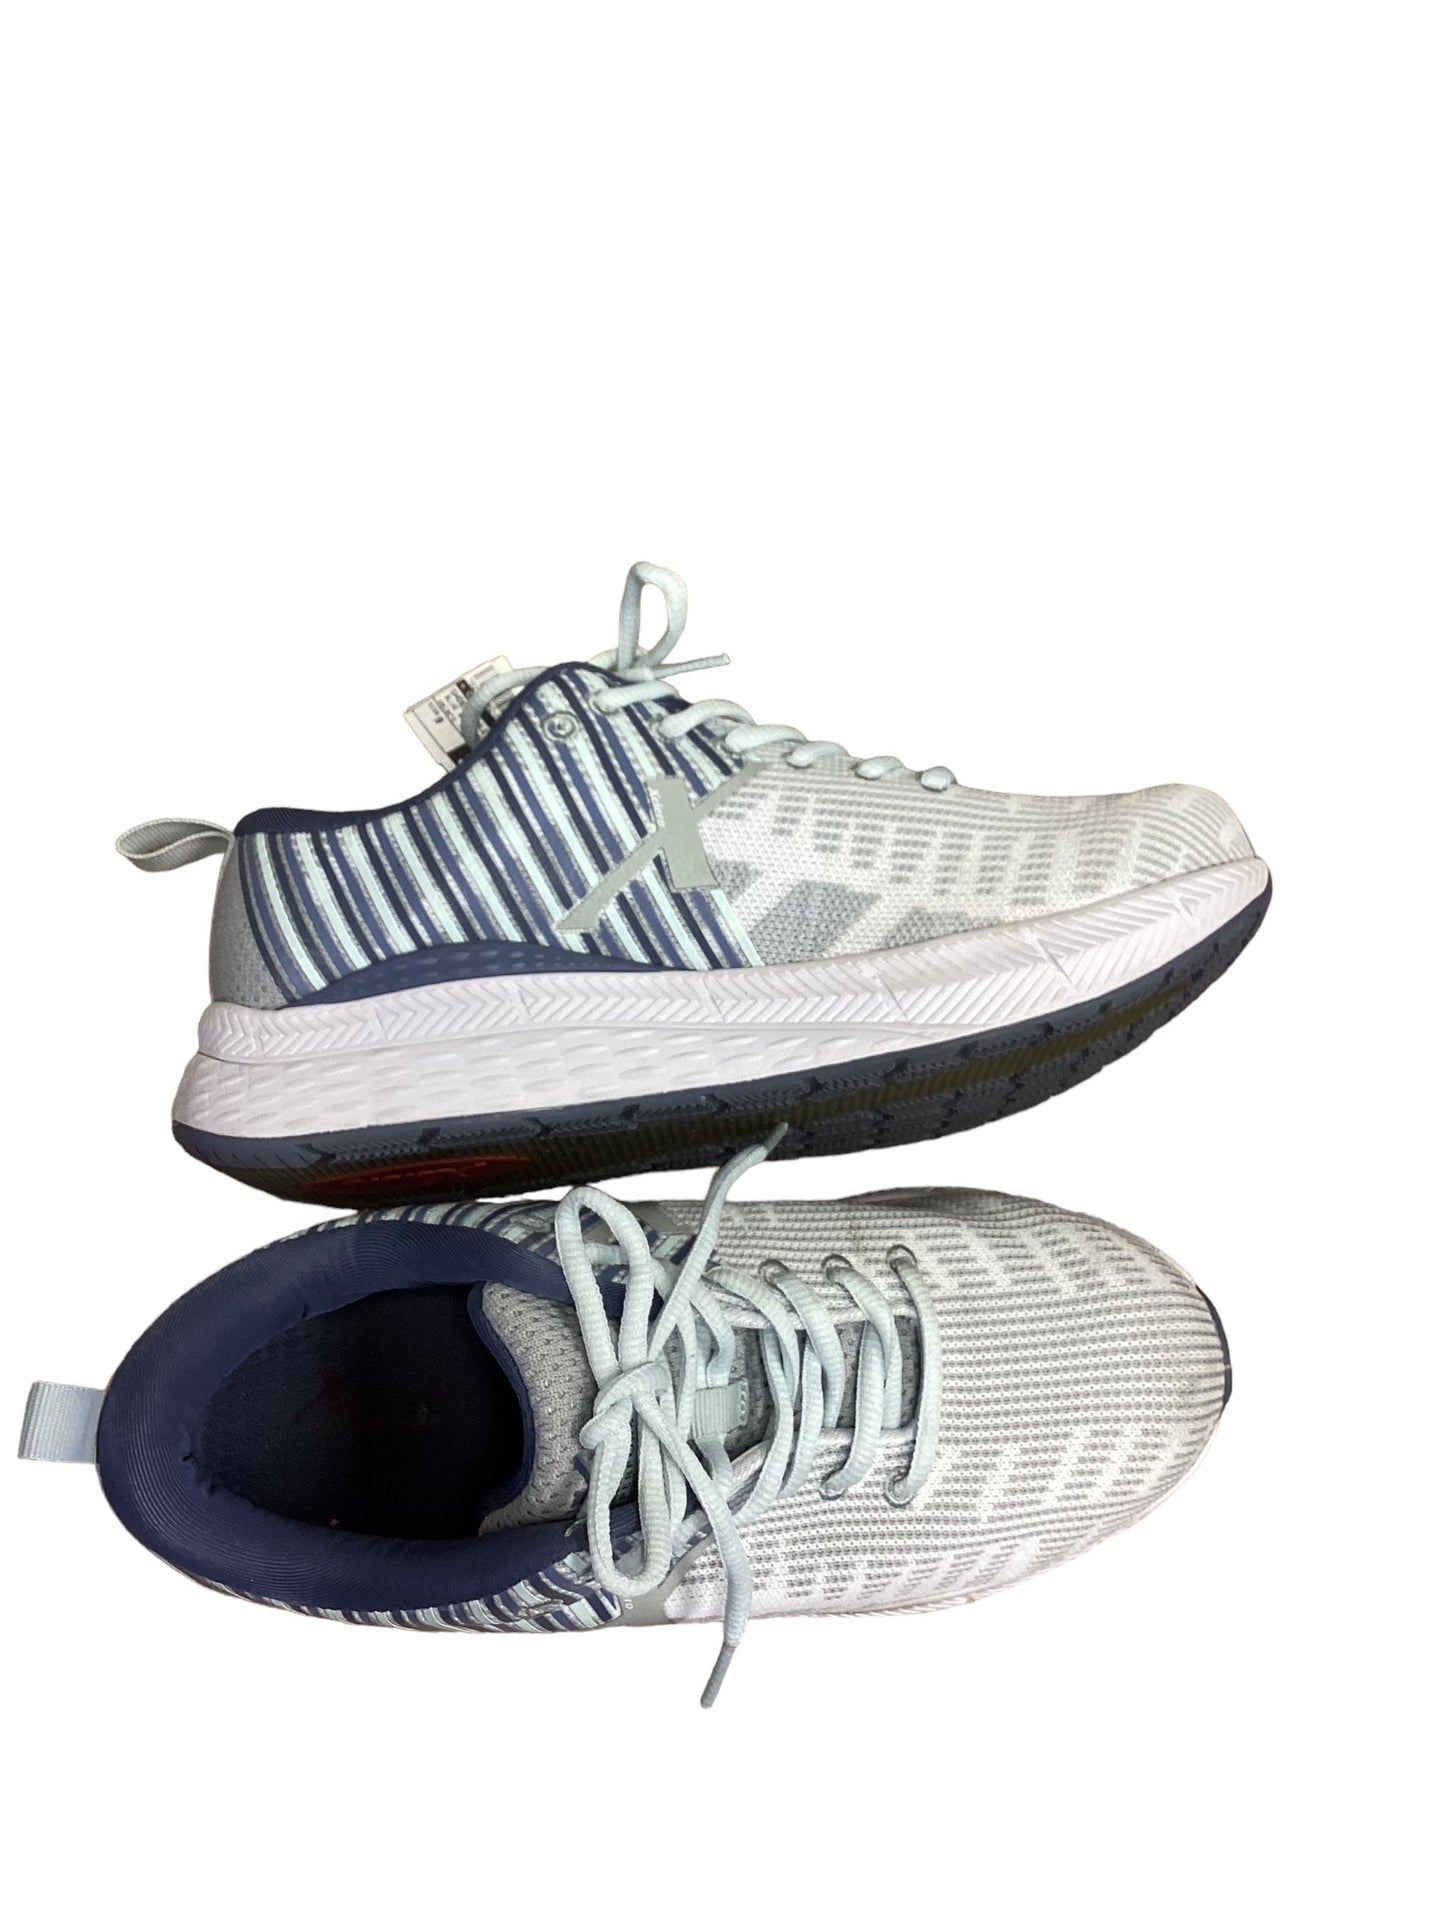 Blue & Grey Shoes Athletic Cma, Size 9